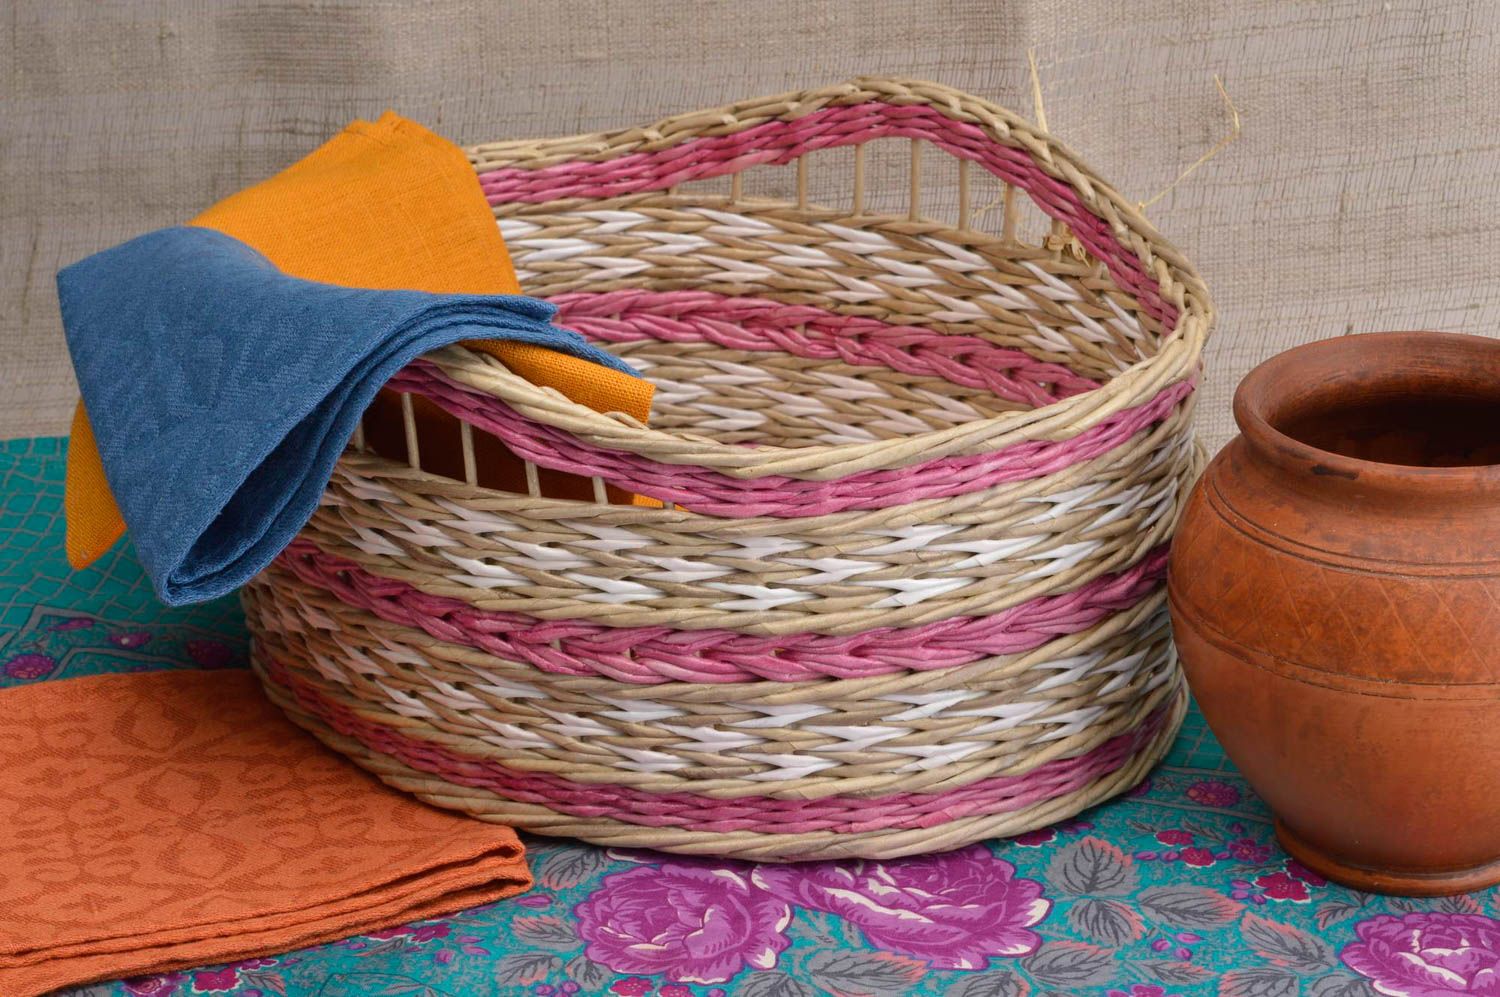 Wicker basket paper wicker basket newspaper basket bedroom decor gift ideas photo 1